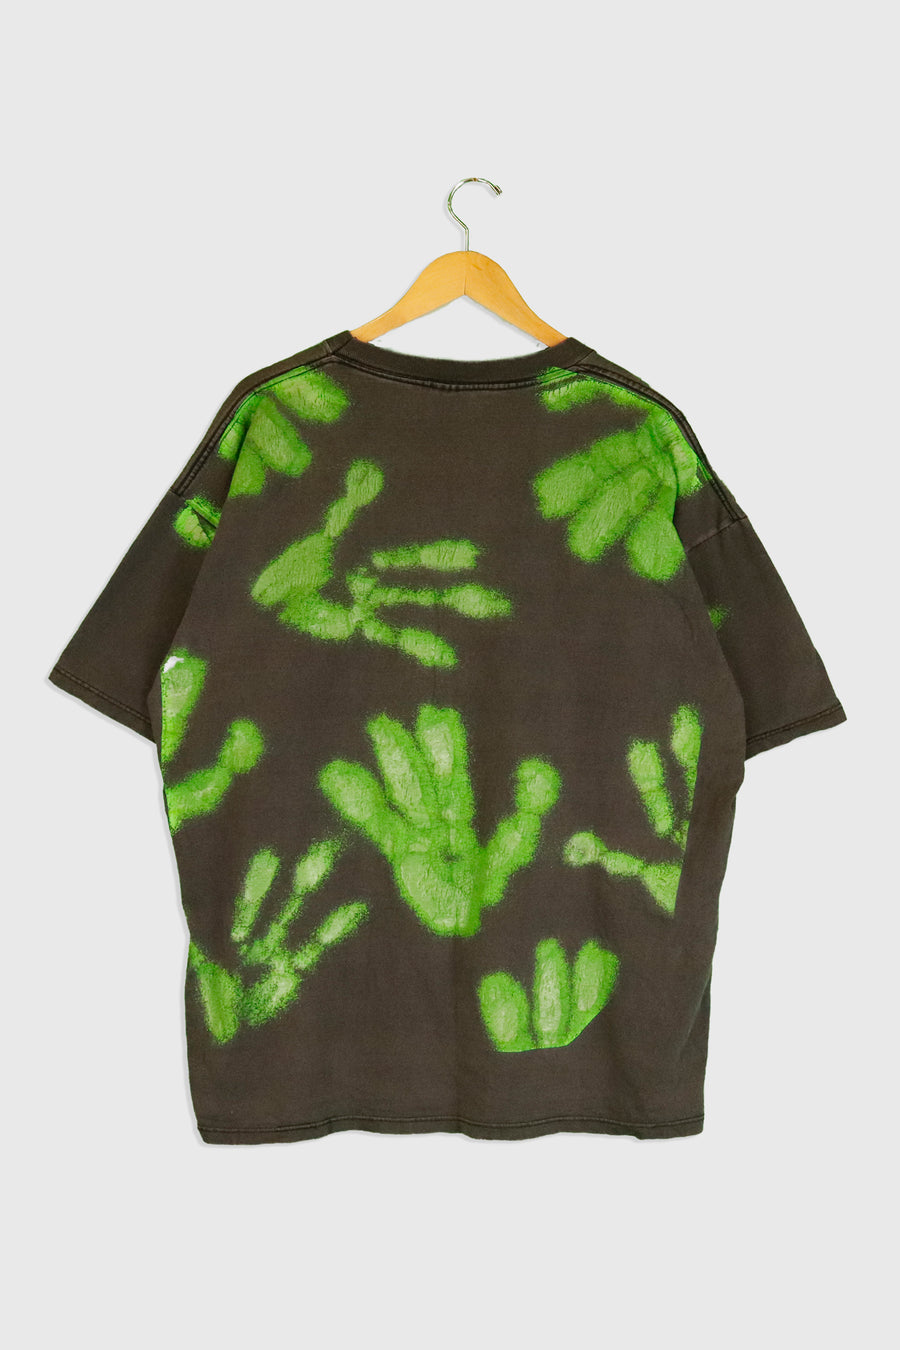 Vintage 1997 Alien First Contact T Shirt Sz XL